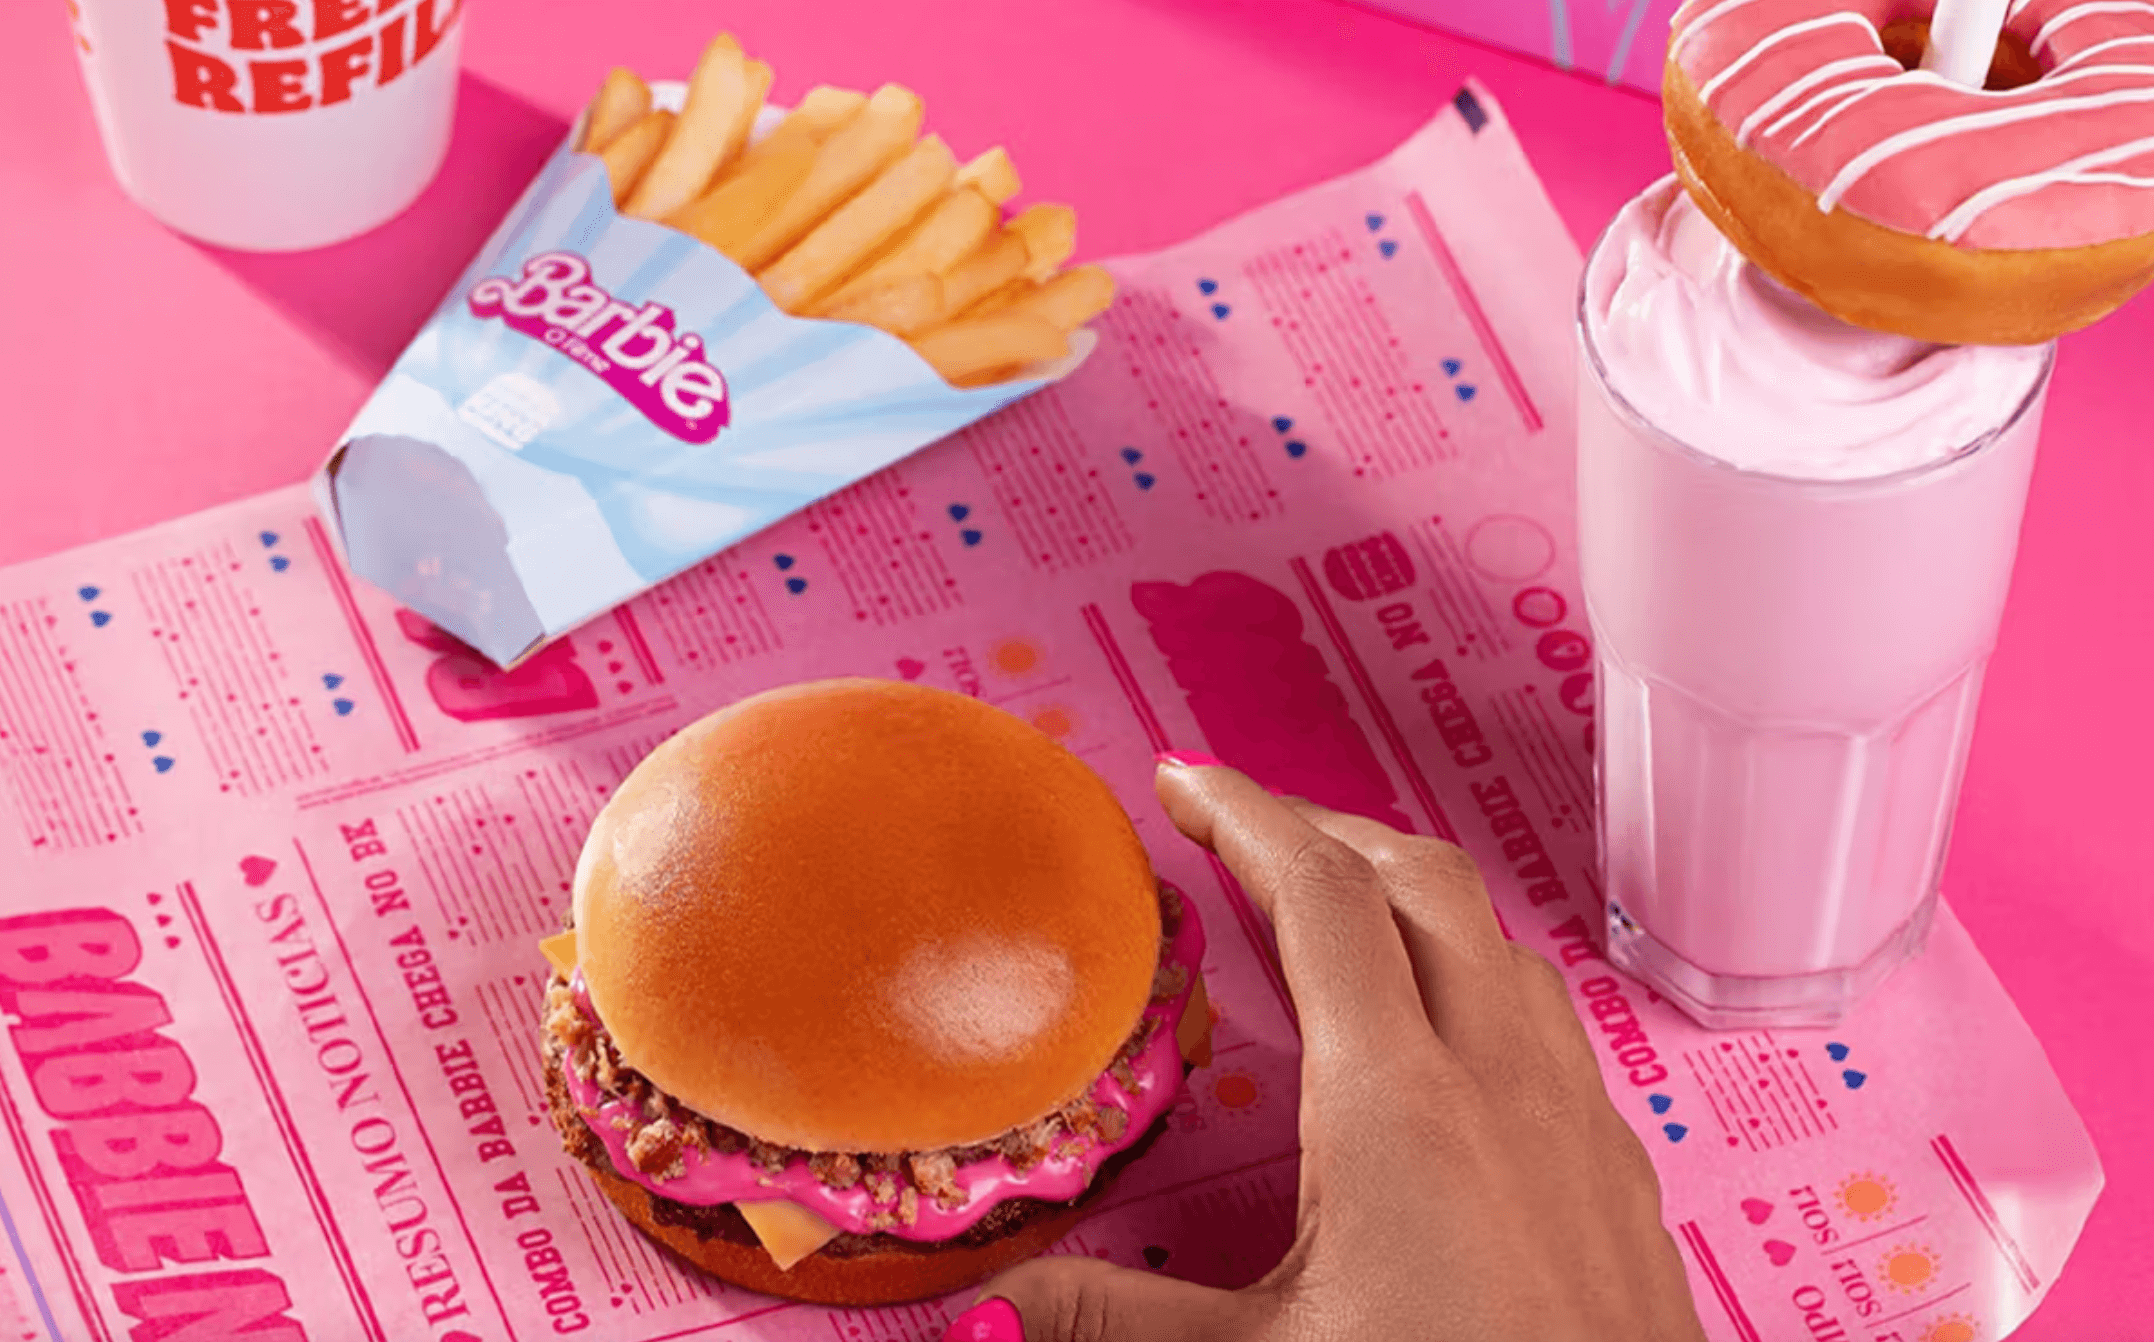 Burger King Brazil - Barbie menü